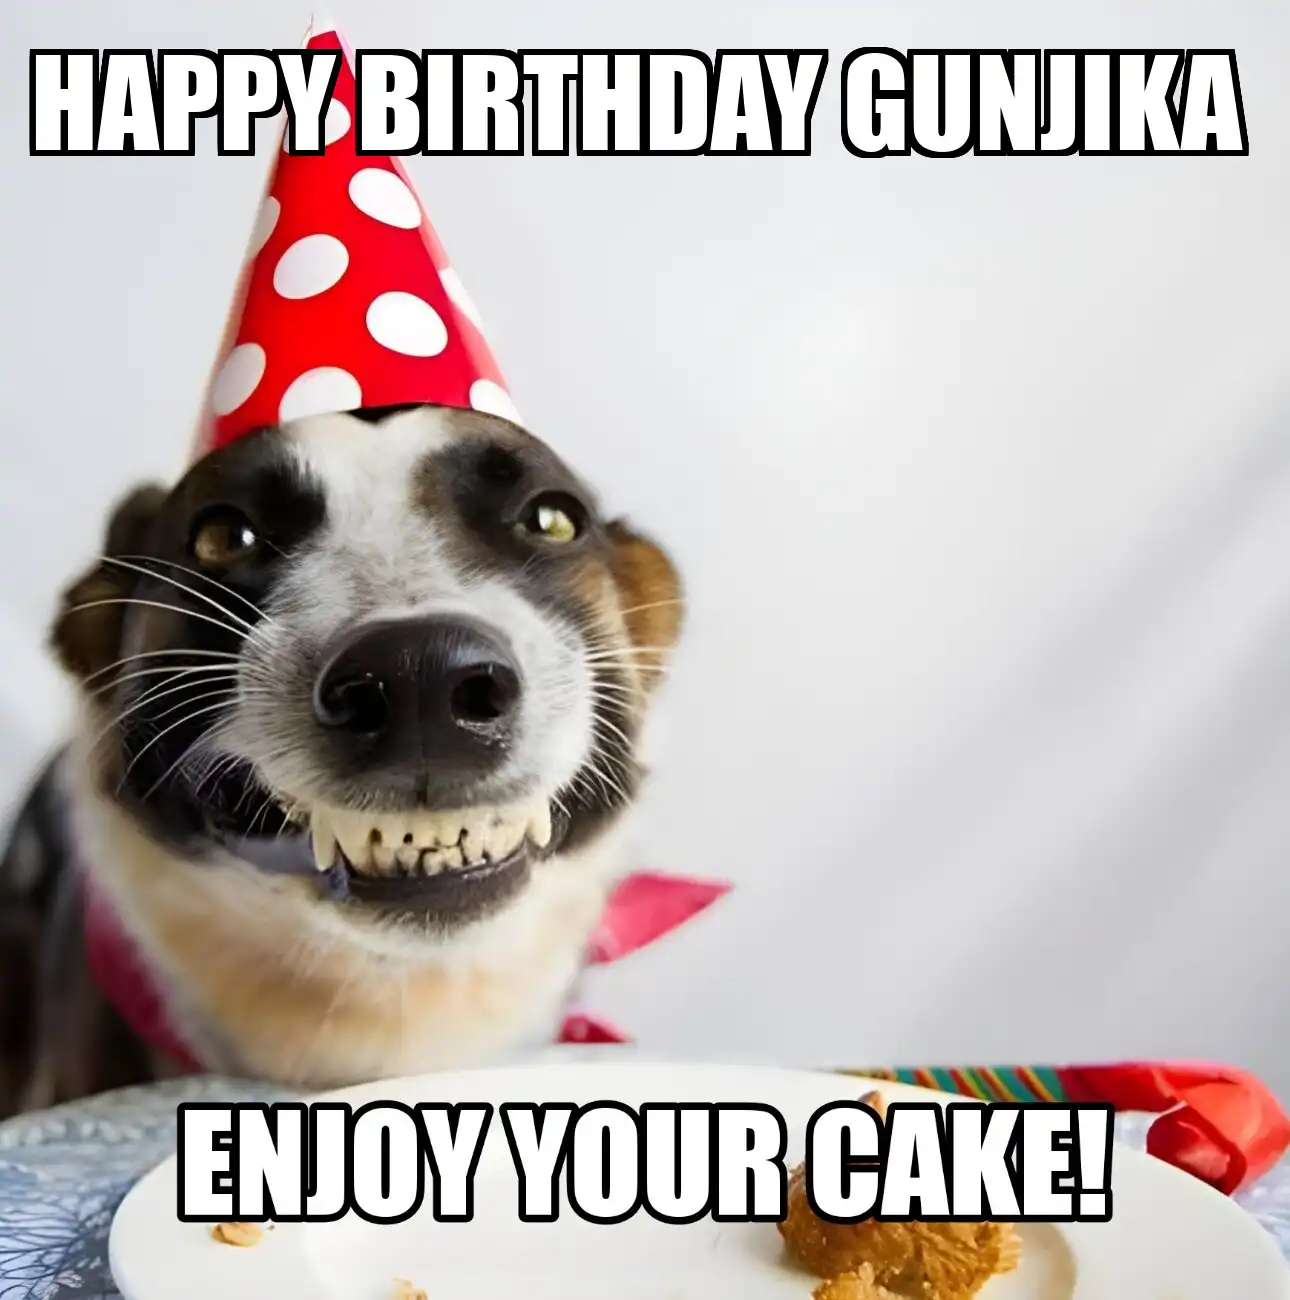 Happy Birthday Gunjika Enjoy Your Cake Dog Meme